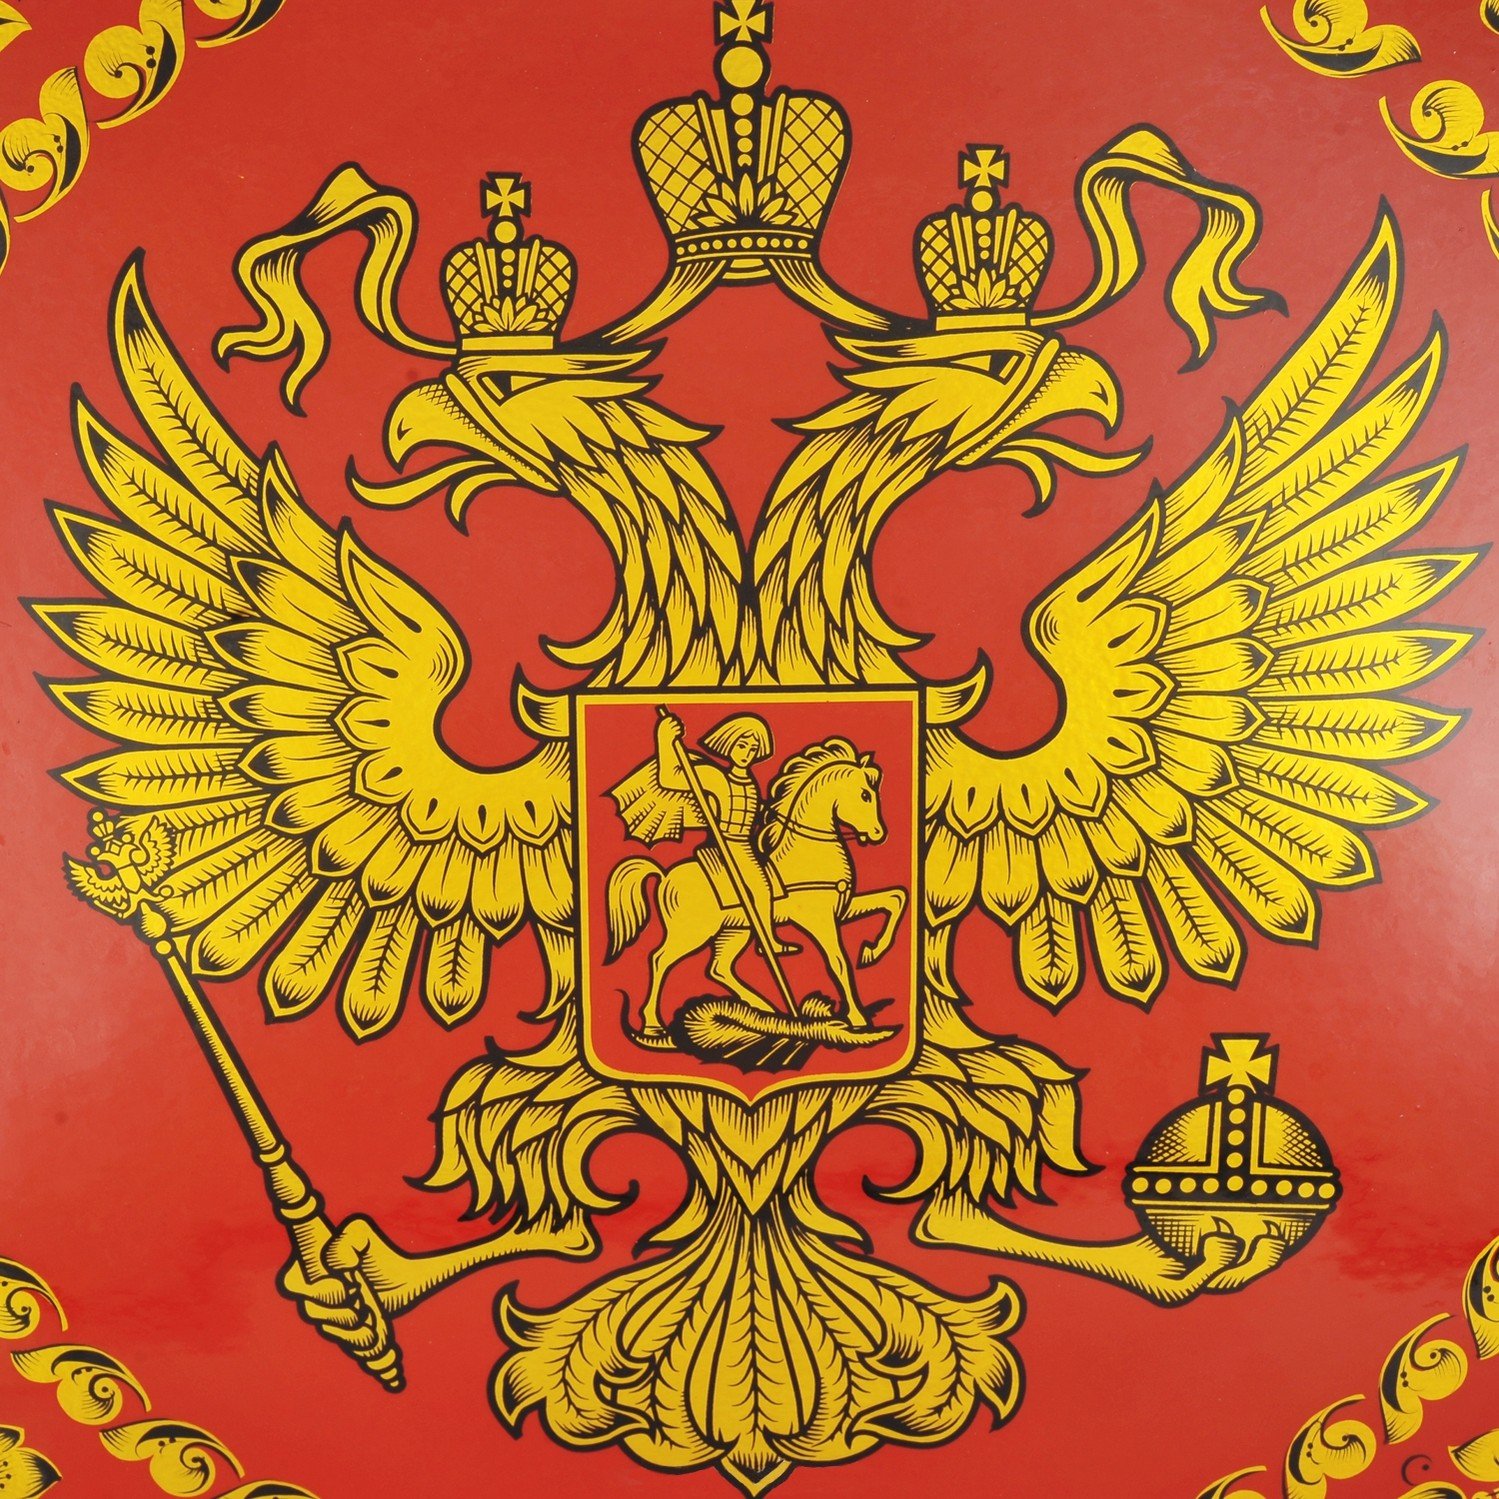 герб какого субъекта изображен на фото